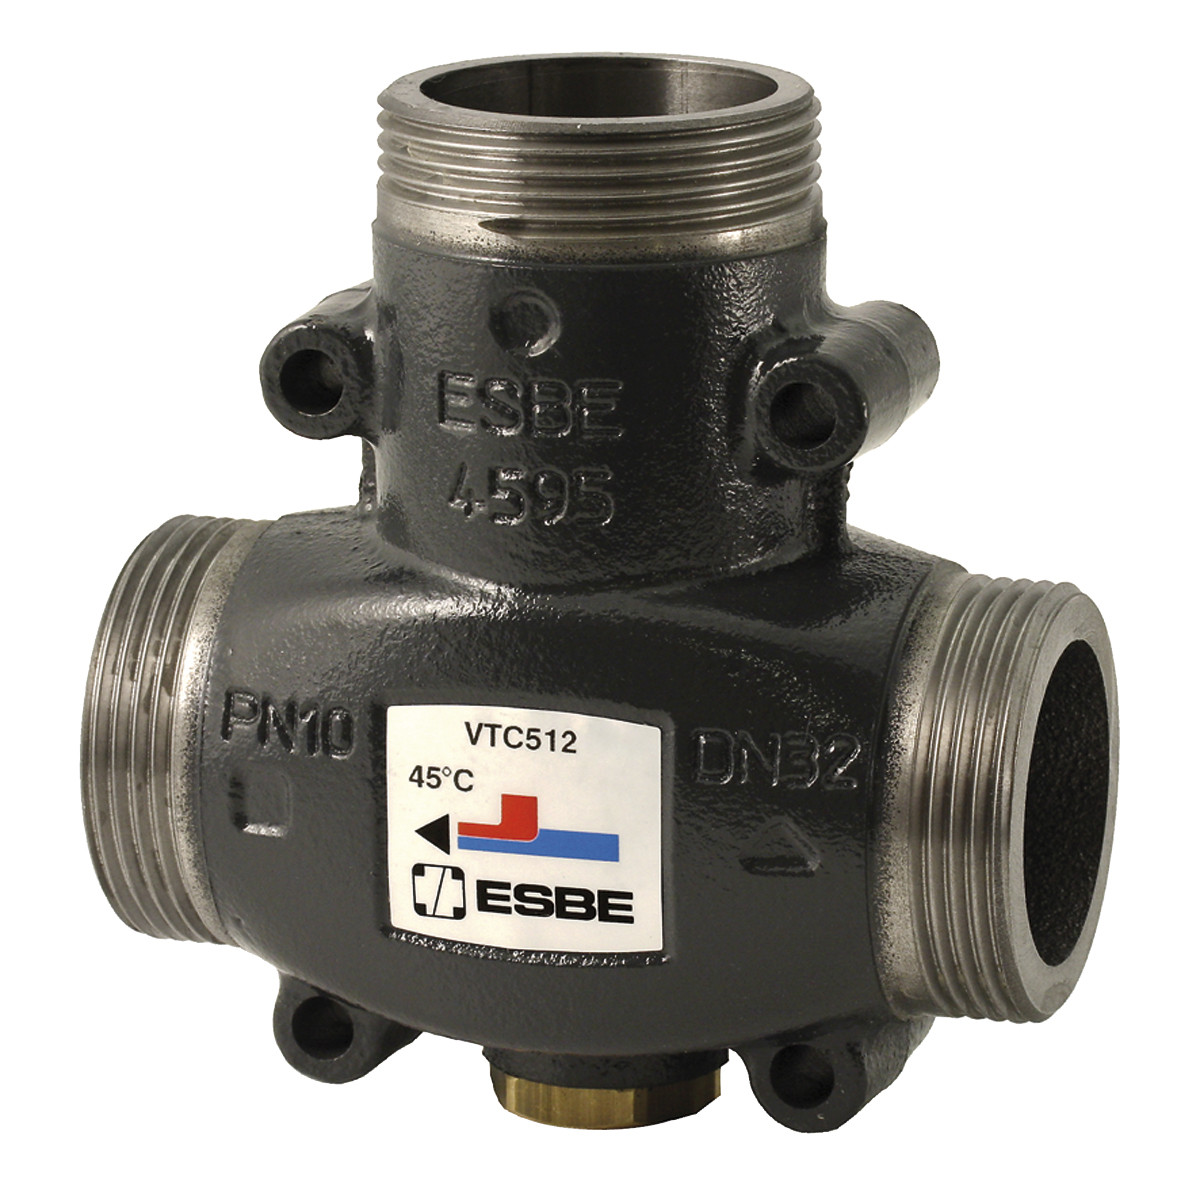 Термостатический смесительный клапан ESBE VTC 512 60°C G 1 1/4" артикул 51021700